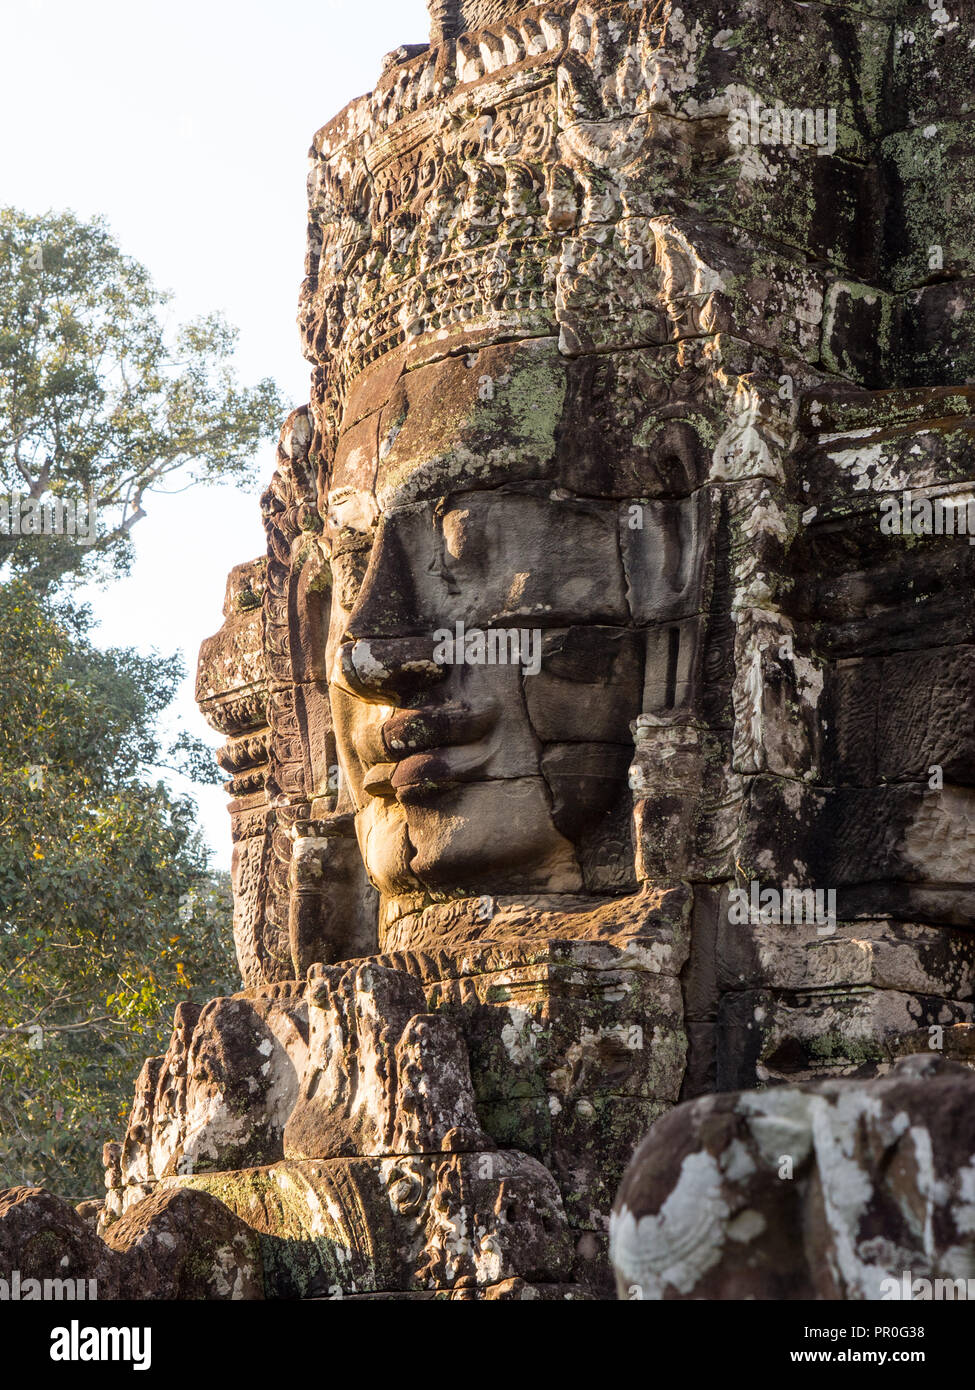 Pierre énorme visage, temple Bayon, Angkor Wat complexe, UNESCO World Heritage Site, près de Siem Reap, Cambodge, Indochine, Asie du Sud-Est, l'Asie Banque D'Images